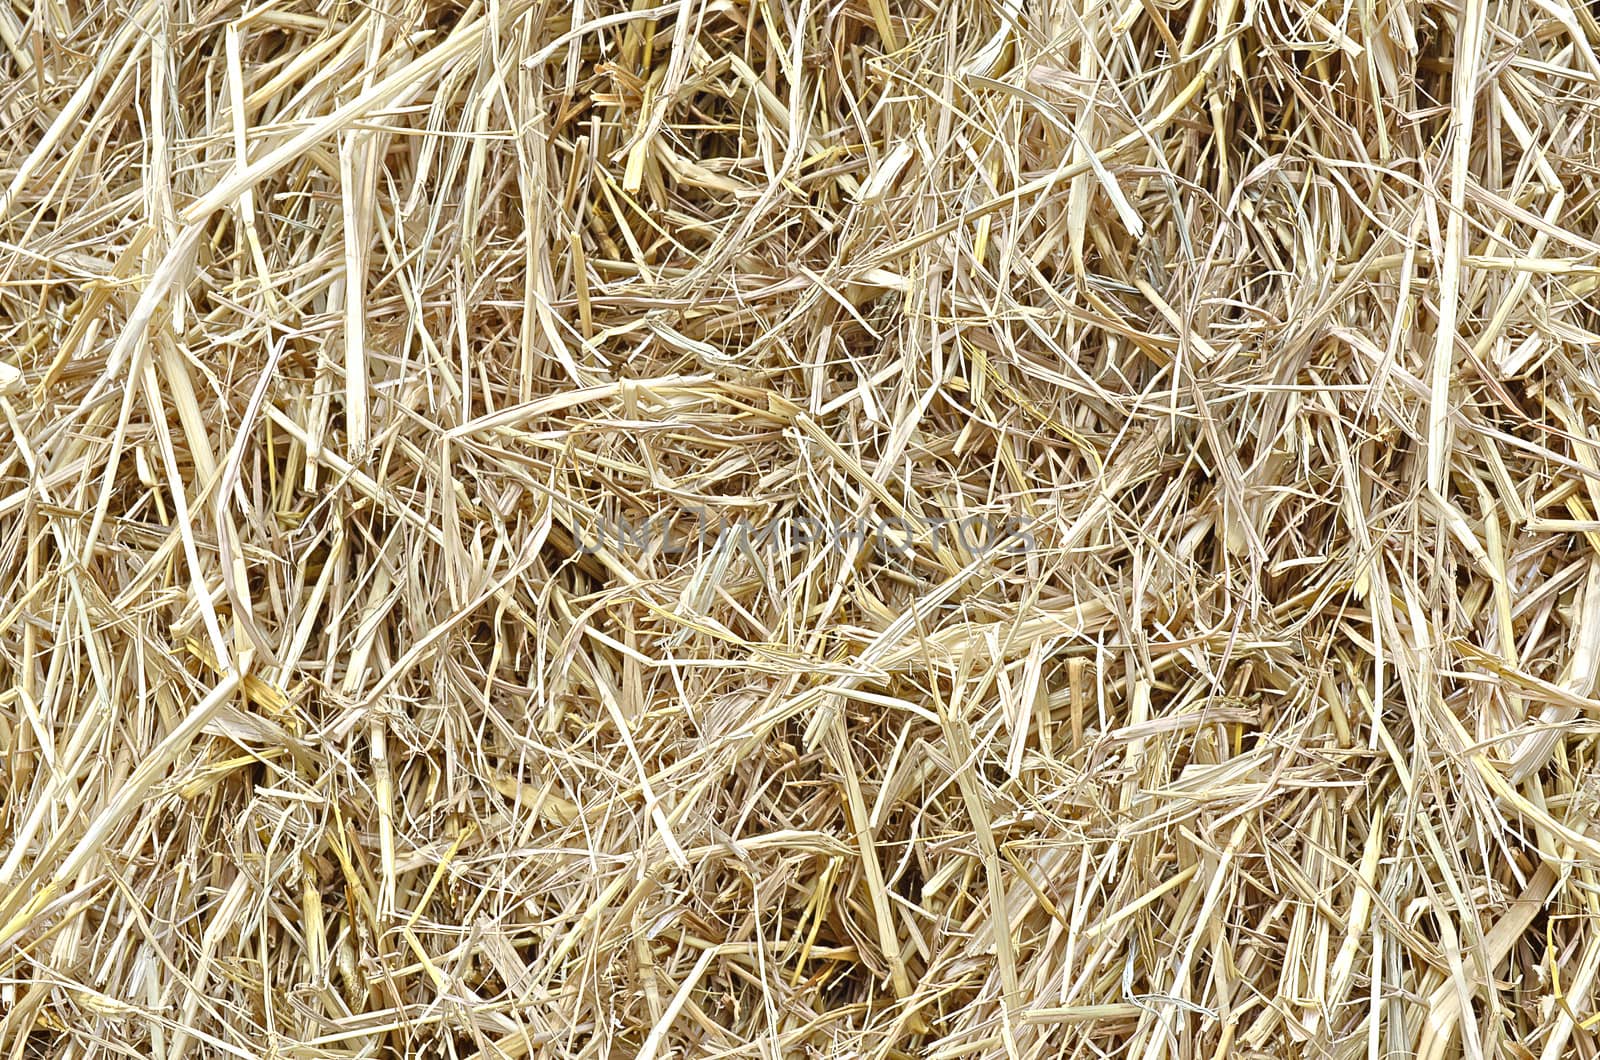 Plie of rice Straw by kobfujar